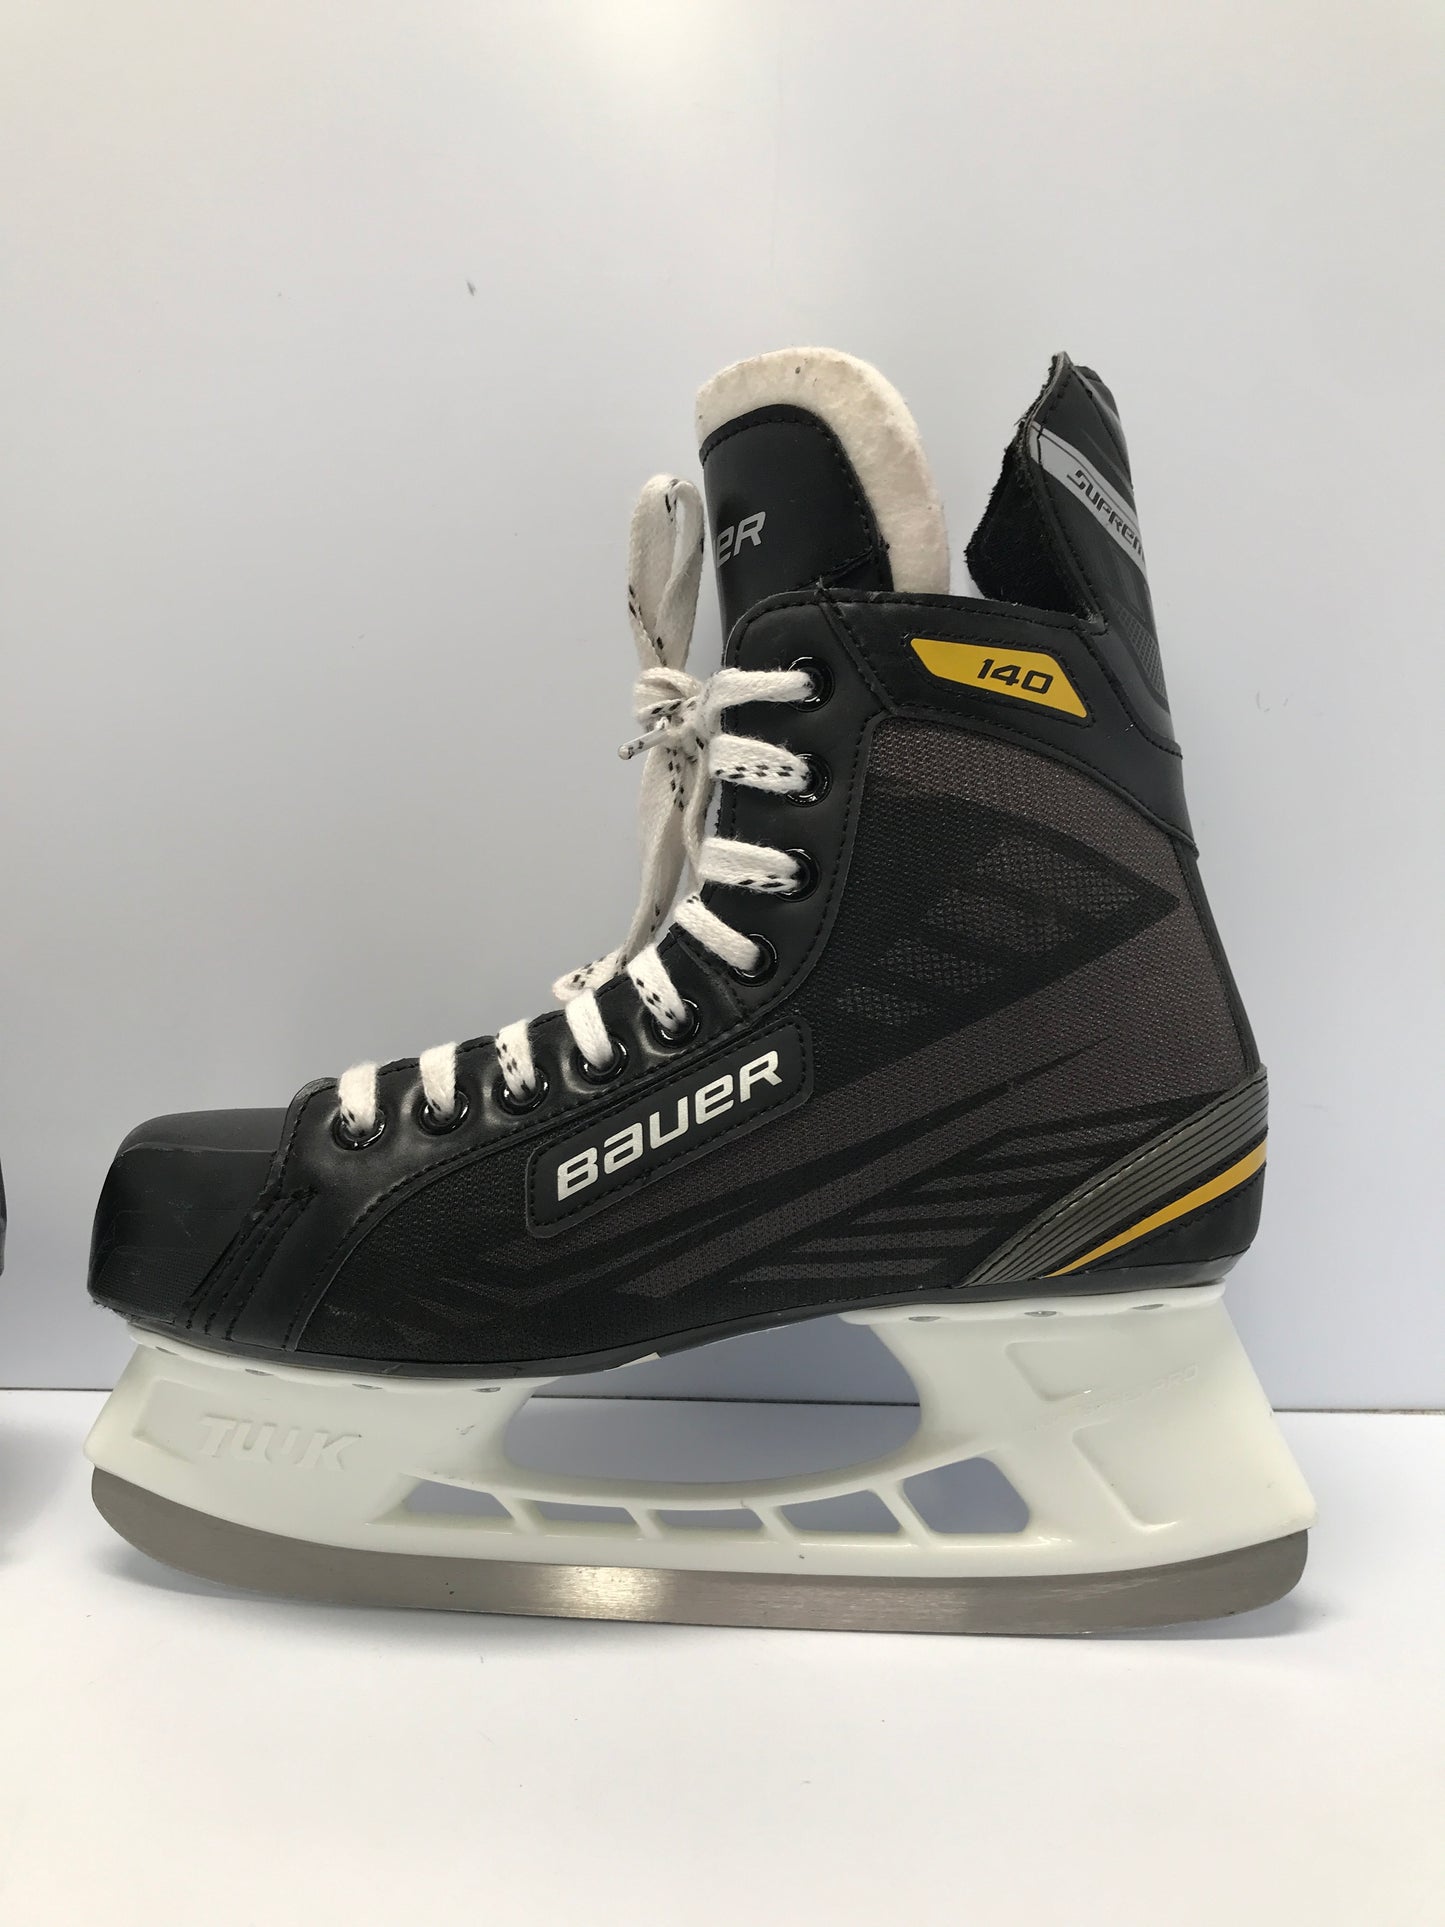 Hockey Skates Men's Size 8.5 Shoe 7 Skate Size Bauer Supreme Excellent Like New